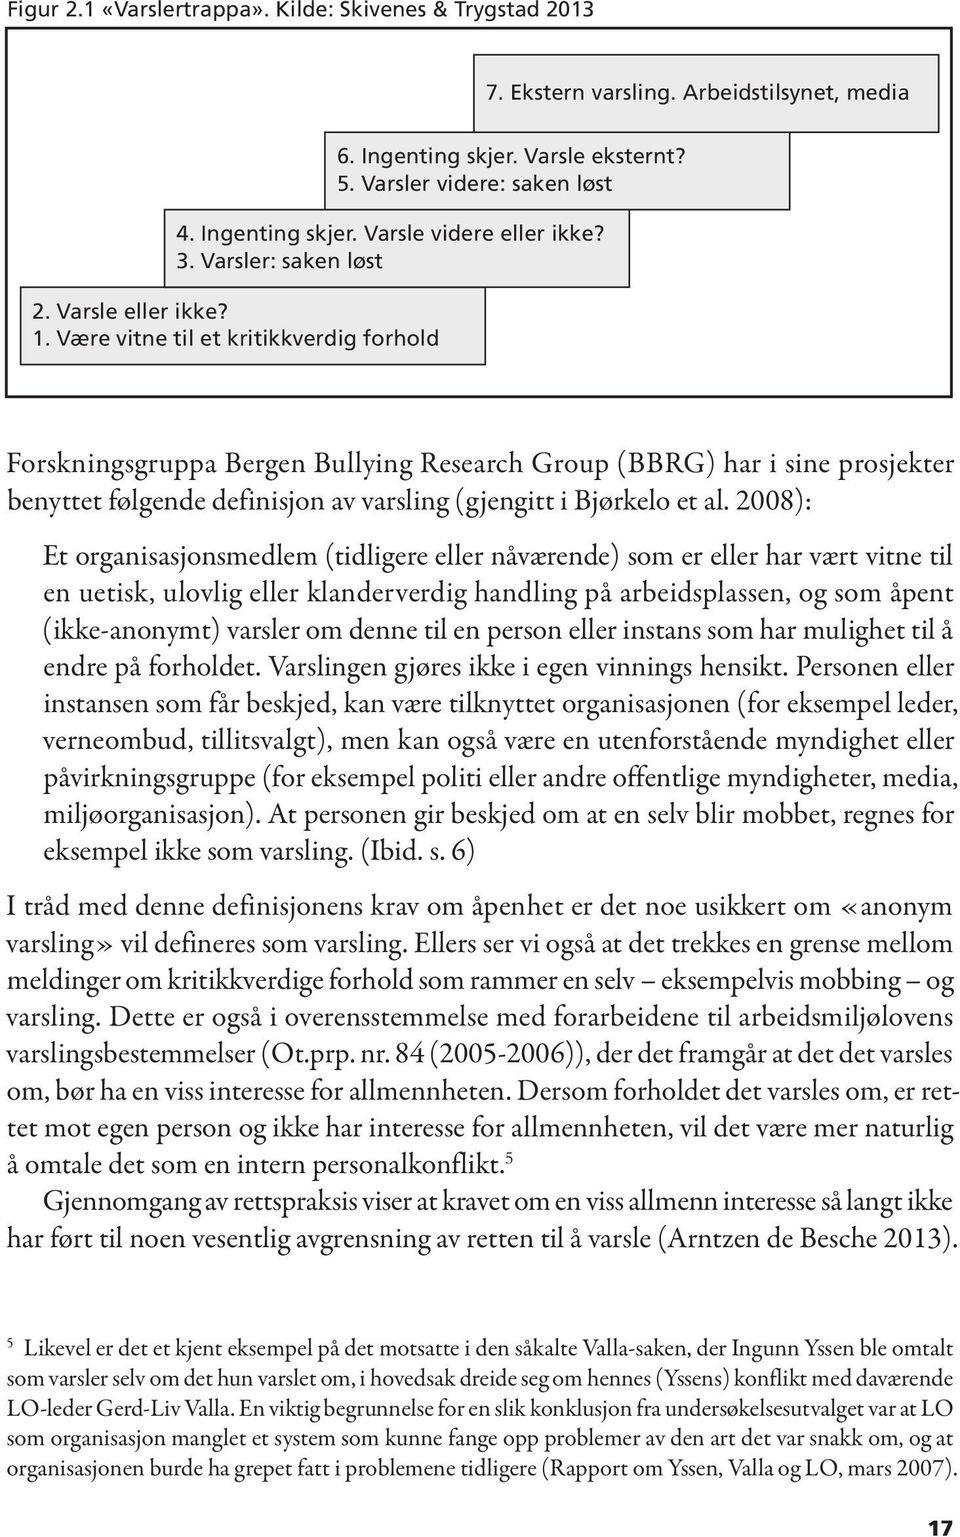 Varsler videre: saken løst Forskningsgruppa Bergen Bullying Research Group (BBRG) har i sine prosjekter benyttet følgende definisjon av varsling (gjengitt i Bjørkelo et al.